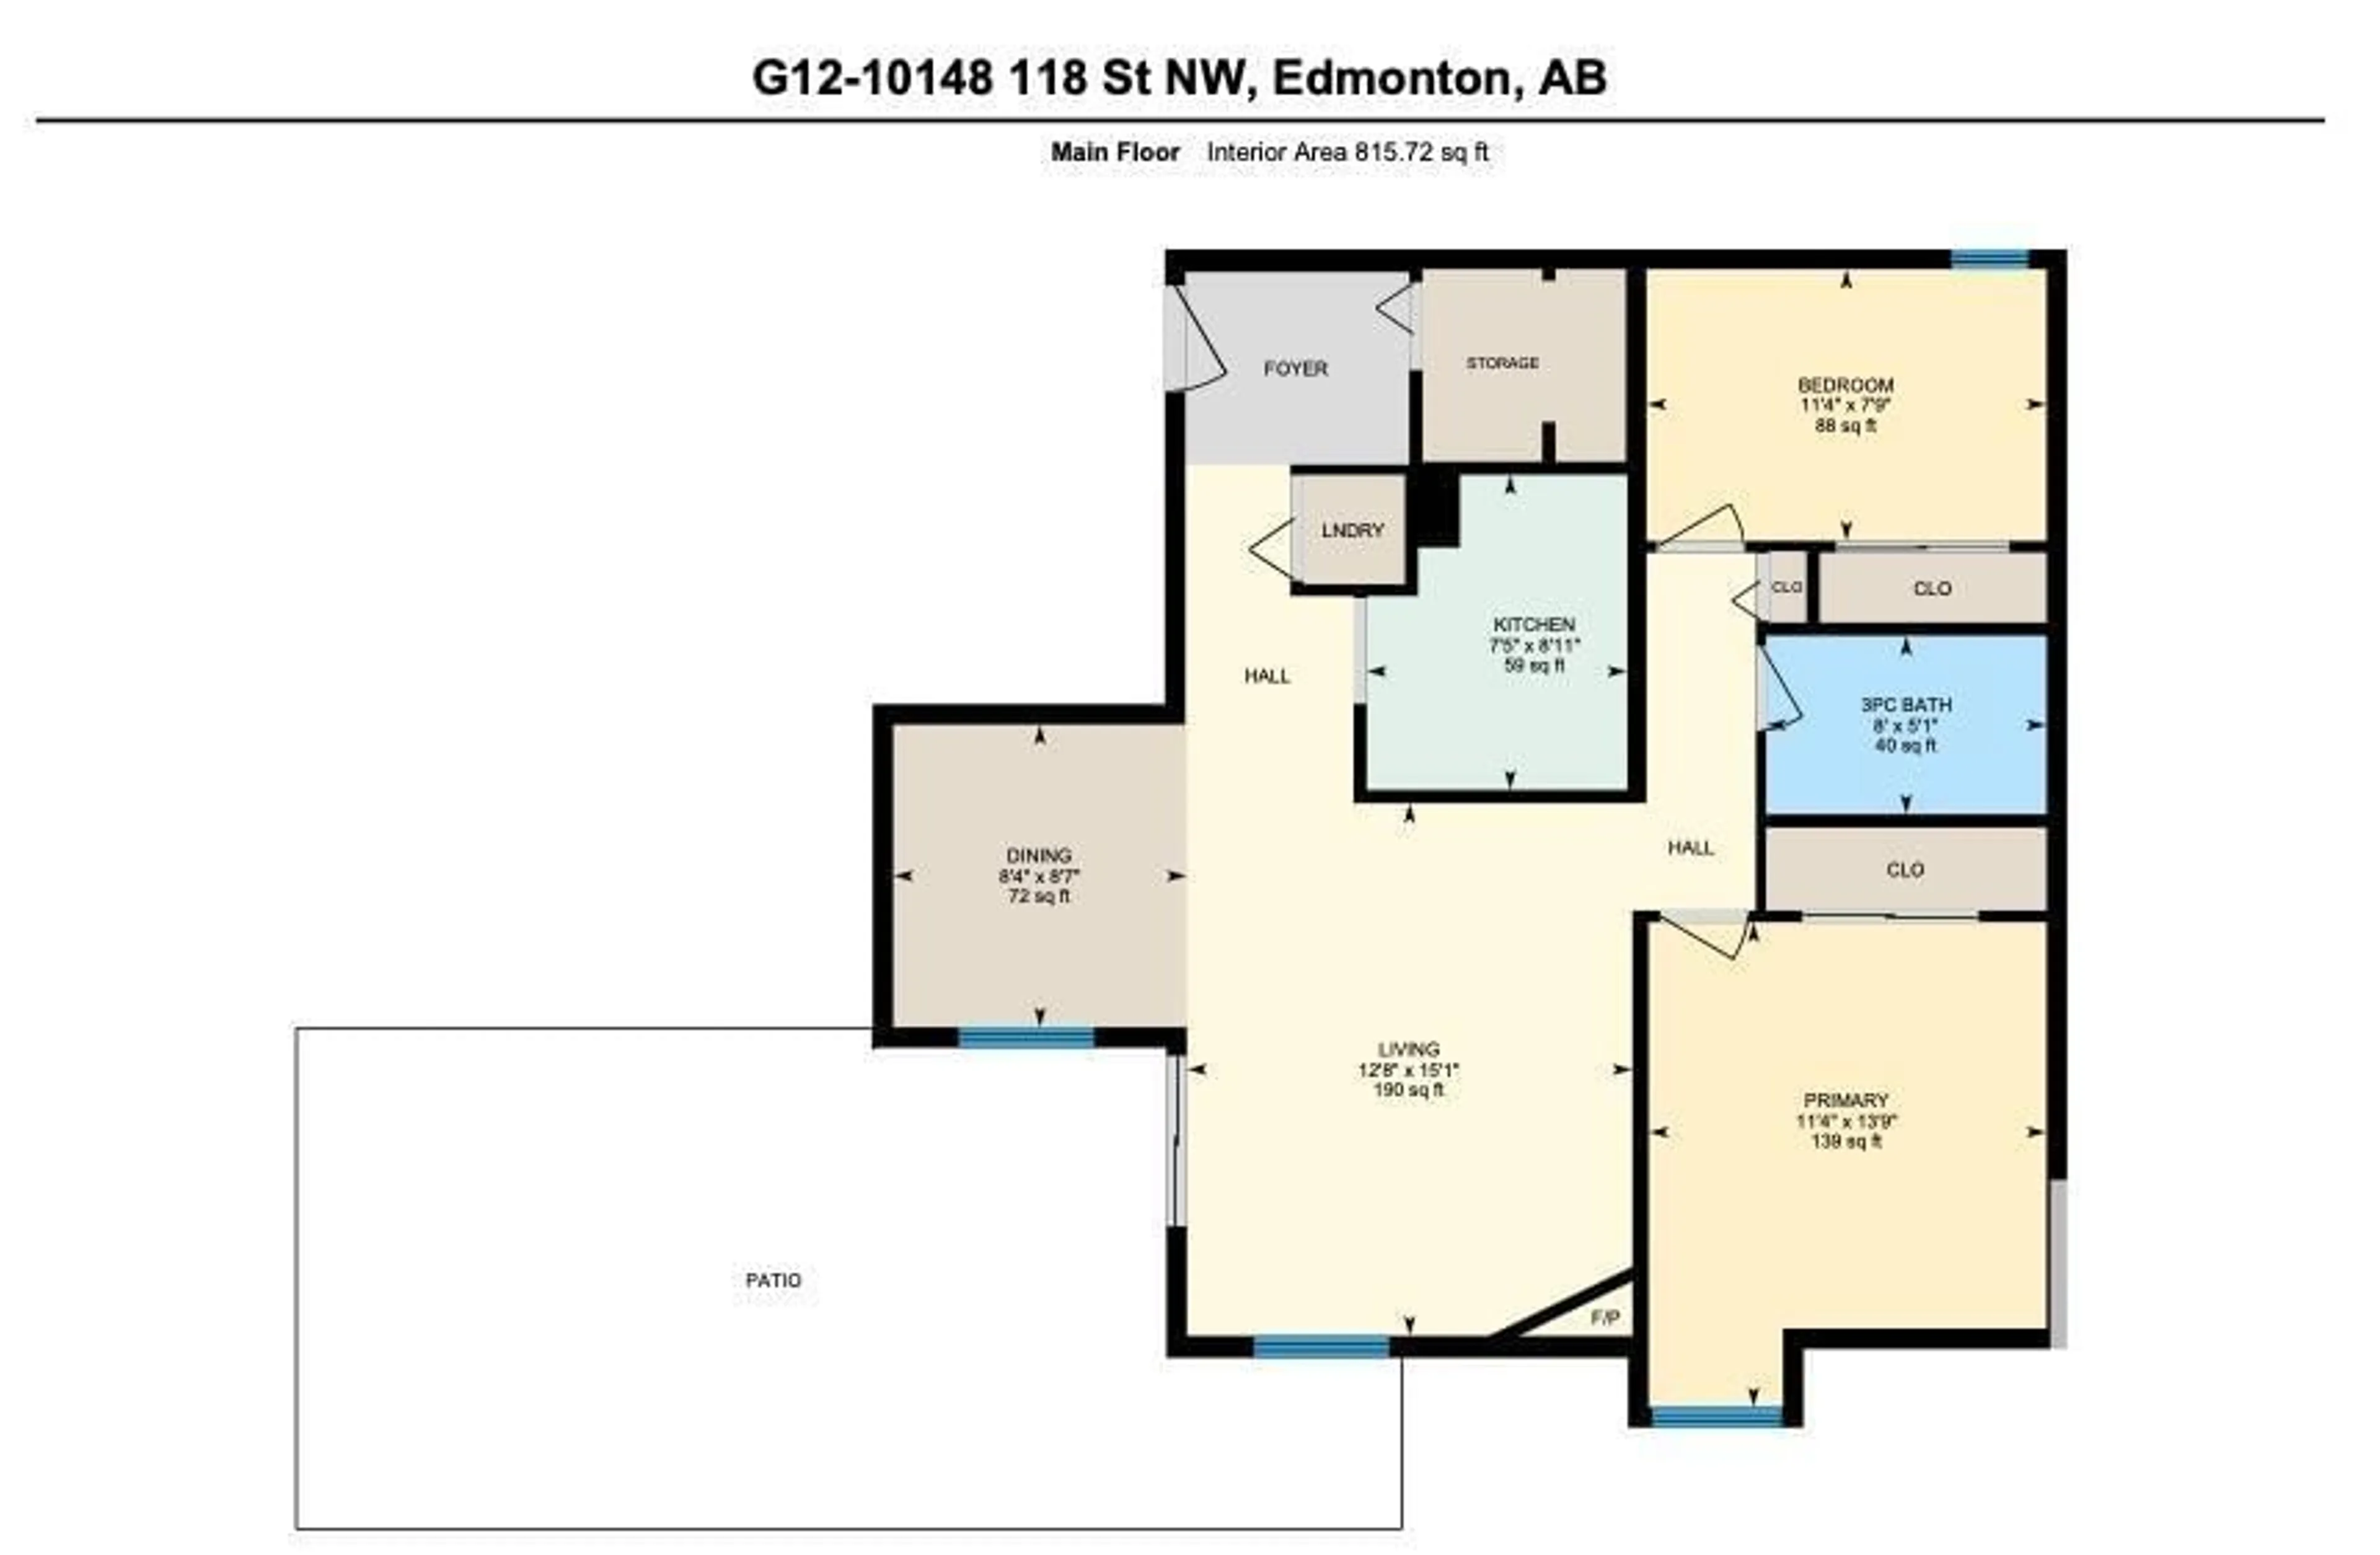 Floor plan for #G12 10148 118 ST NW, Edmonton Alberta T5K1Y4